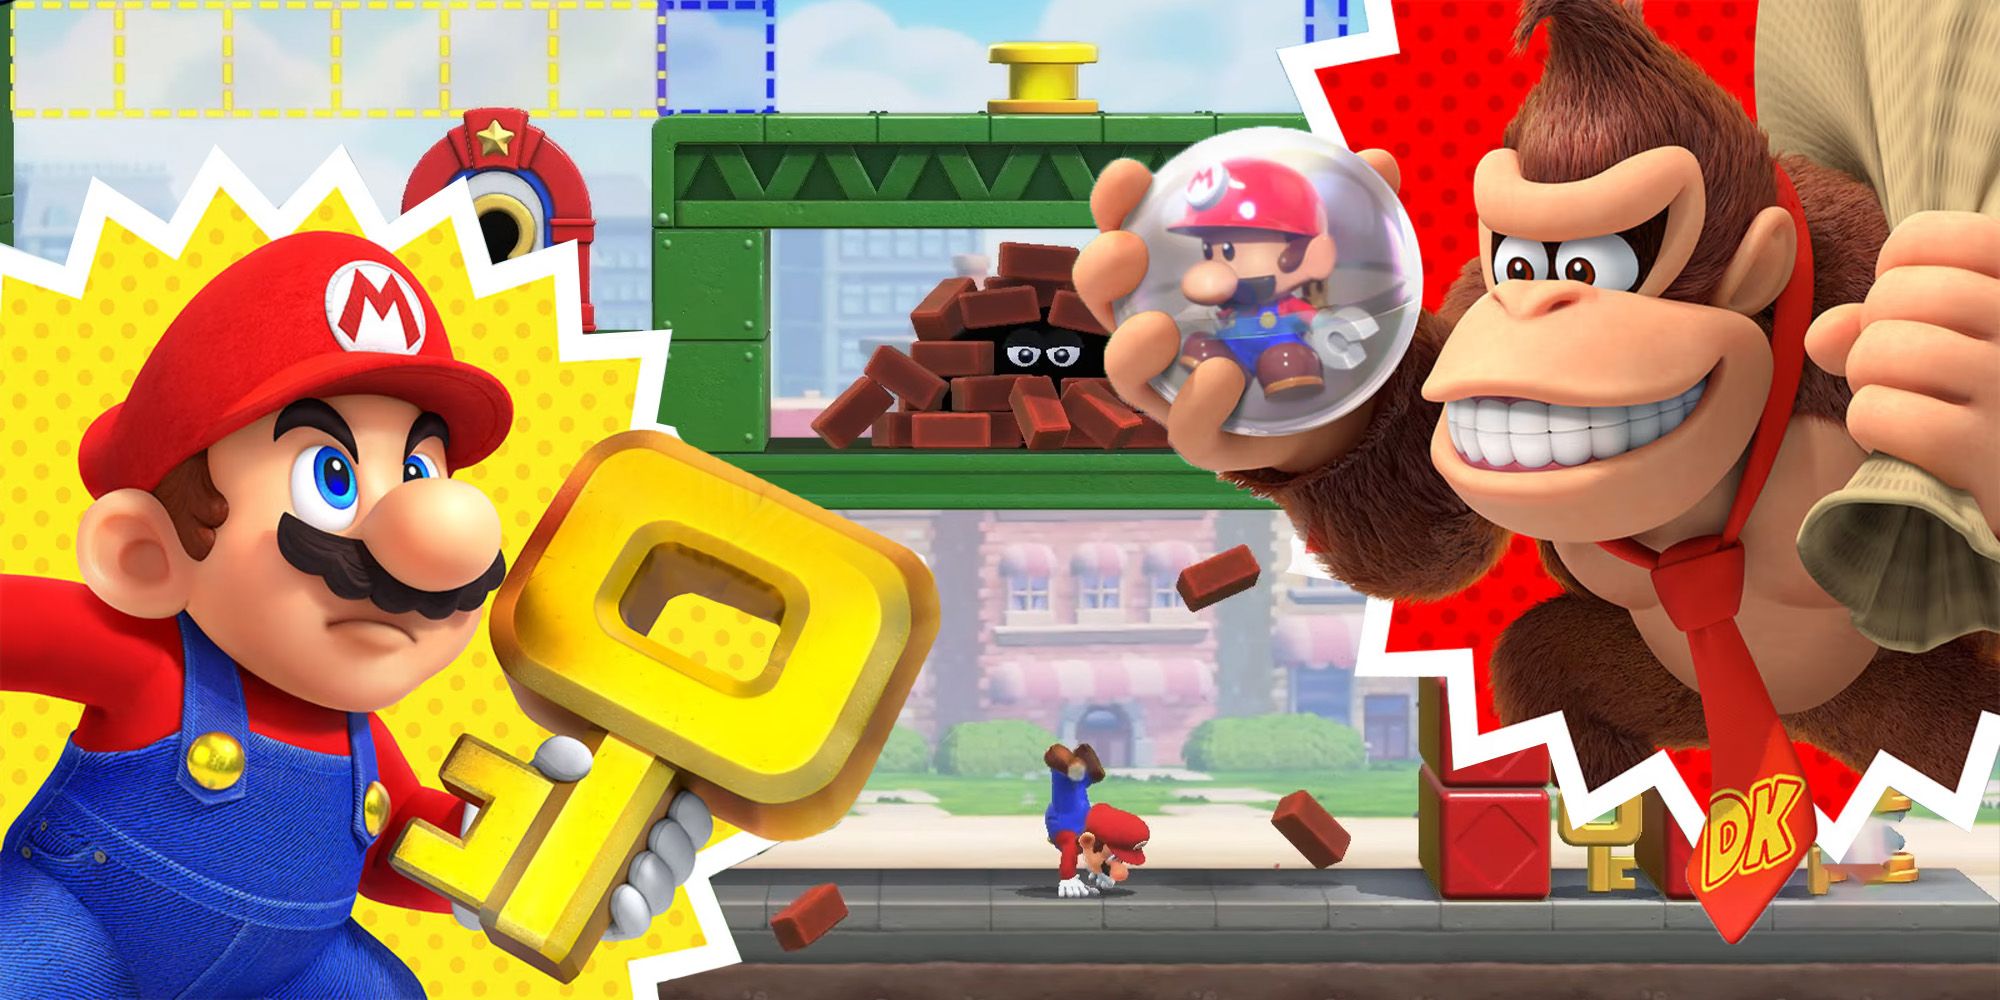 "Mario vs Donkey Kong" Talkback (Spoilers)